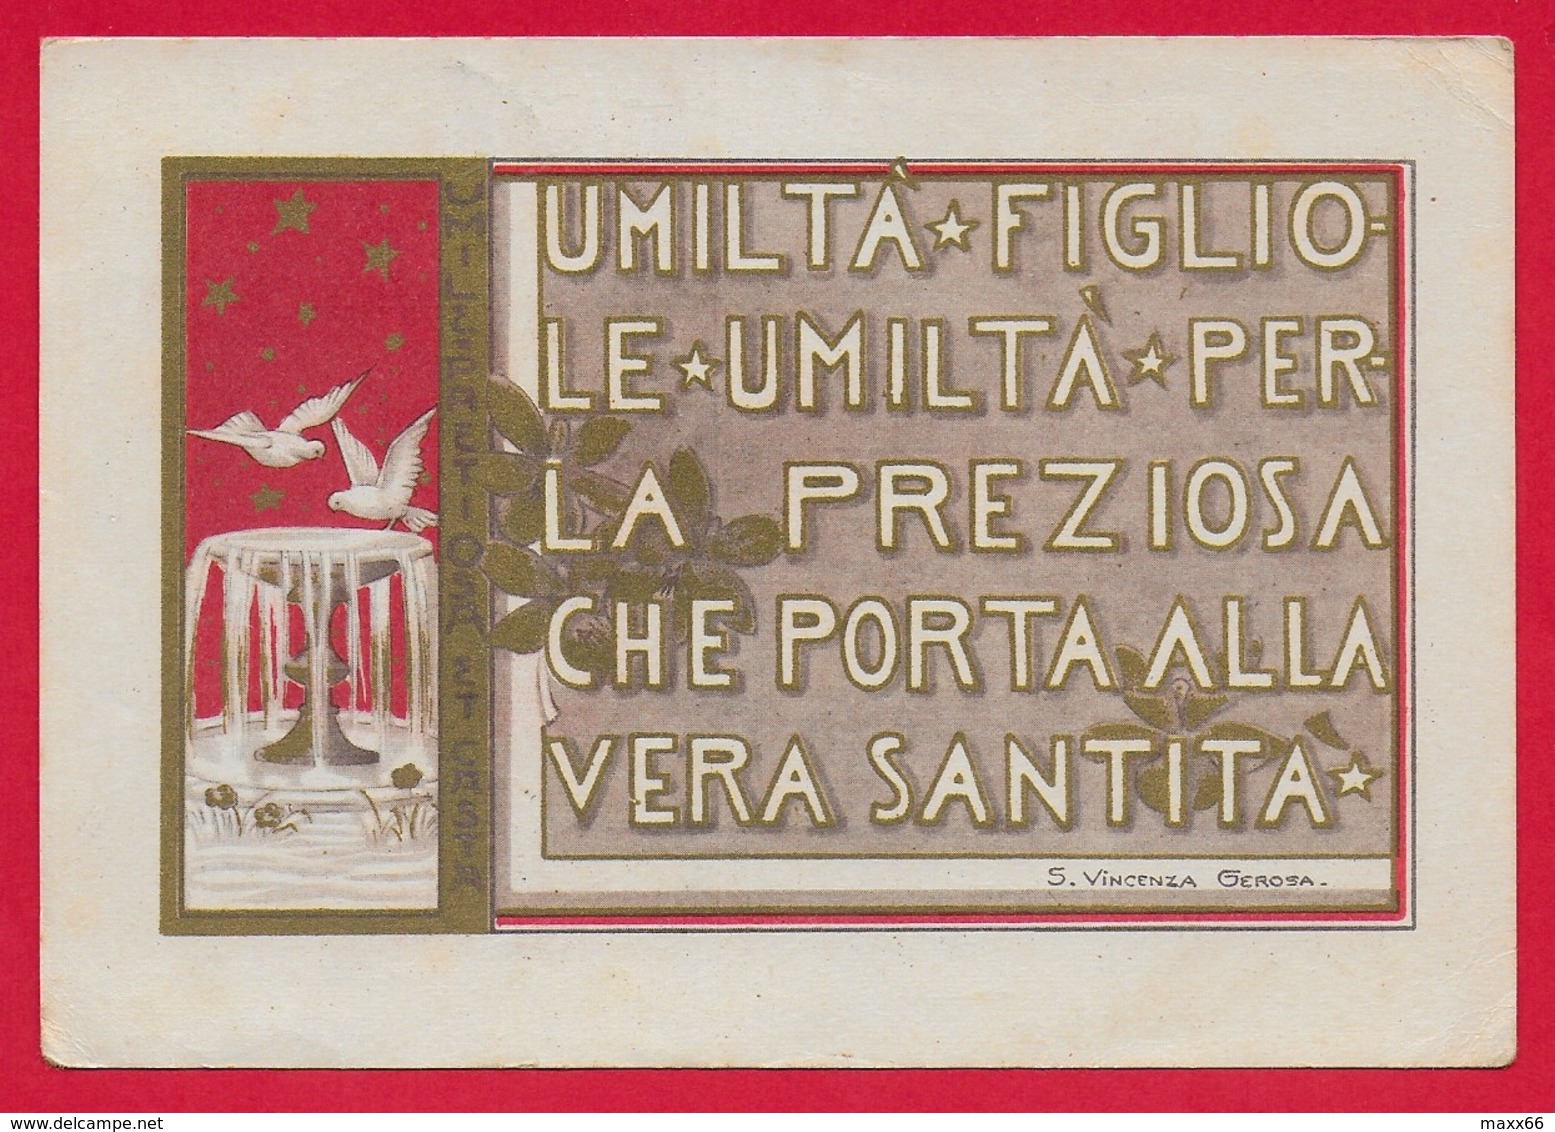 CARTOLINA VG ITALIA - Umiltà Perla Preziosa Che Porta Alla Santità - S. Vincenza GEROSA Suore Di Carità - 10 X 15 - 1959 - Santi